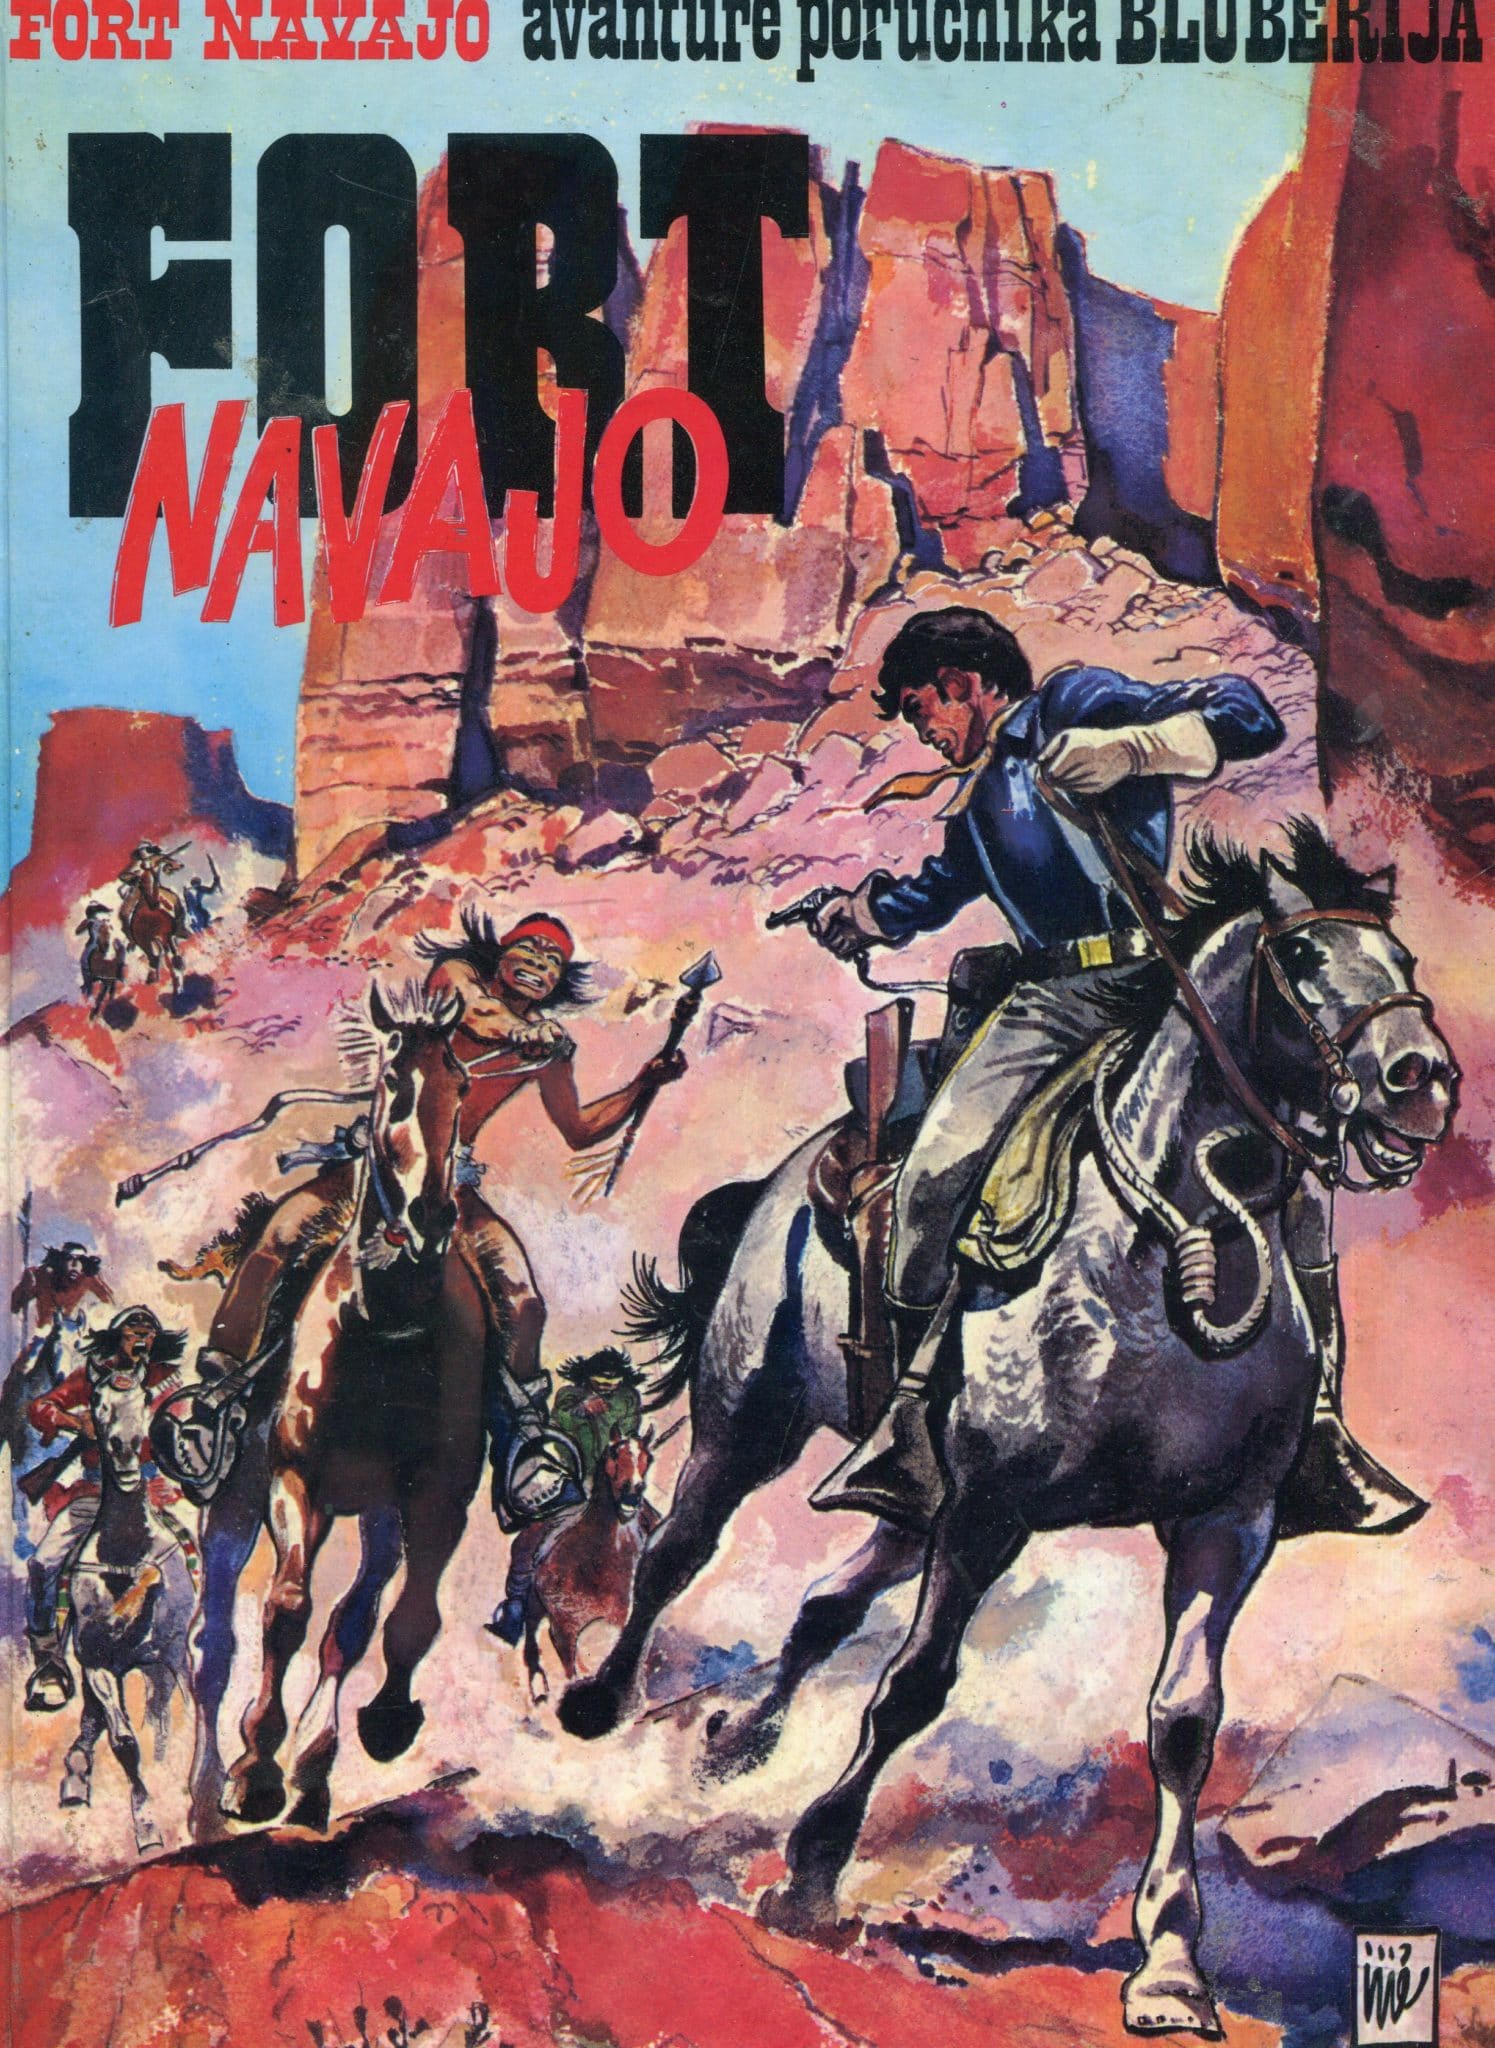 Fort Navajo- avanture poručnika Blueberija Tekst Jean-Michel Charlier, crtež Jean Giraud